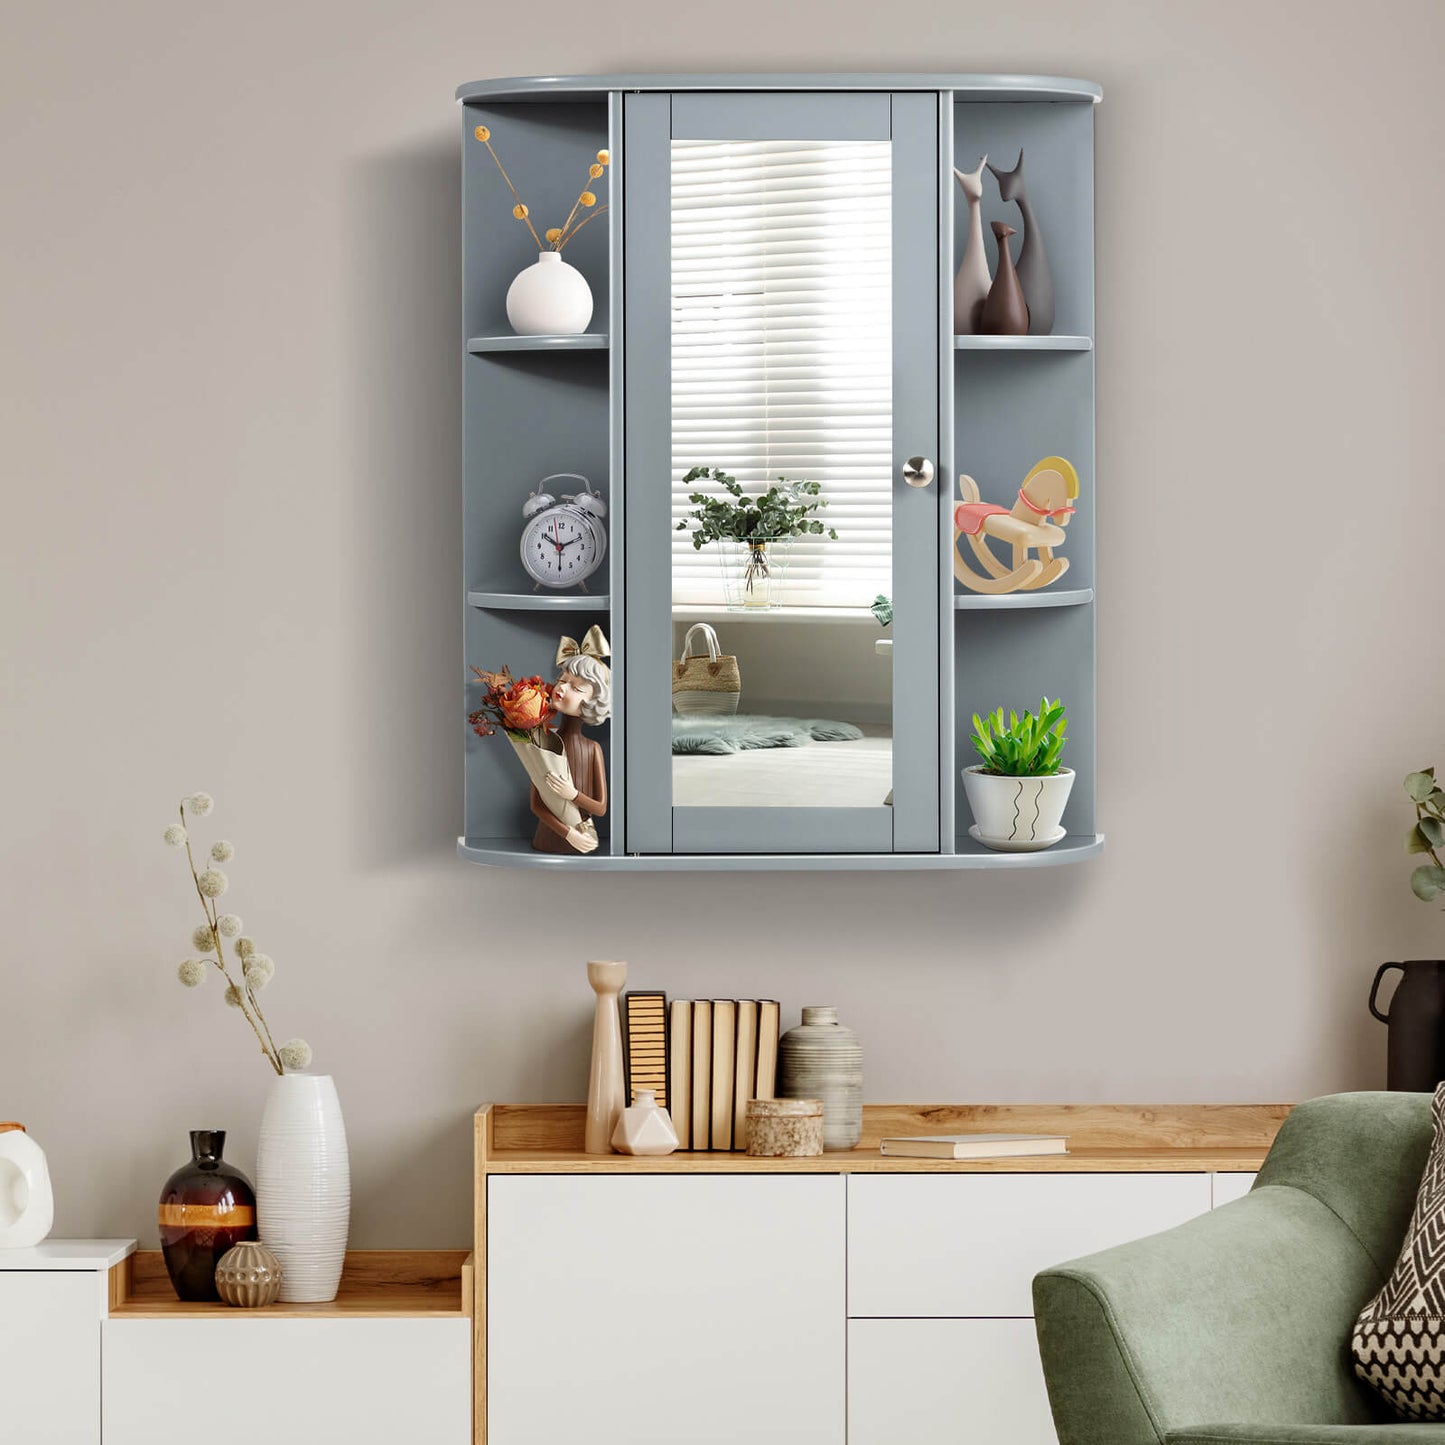 Bathroom Single Door Shelves Wall Mount Cabinet with Mirror, Gray - Gallery Canada